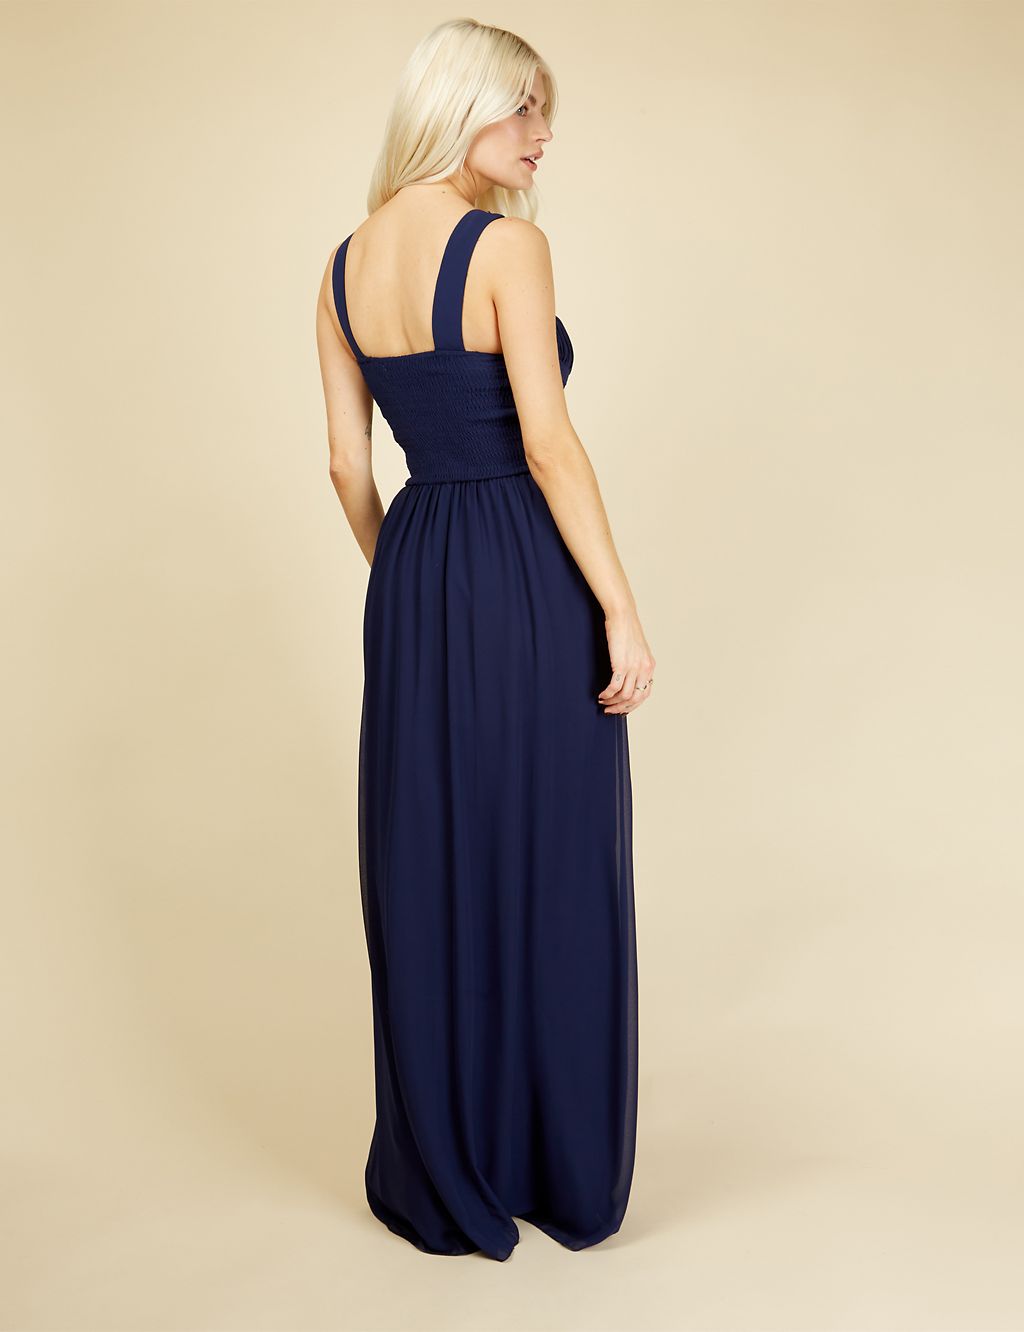 Embellished Sleeveless Maxi Waisted Dress 5 of 5